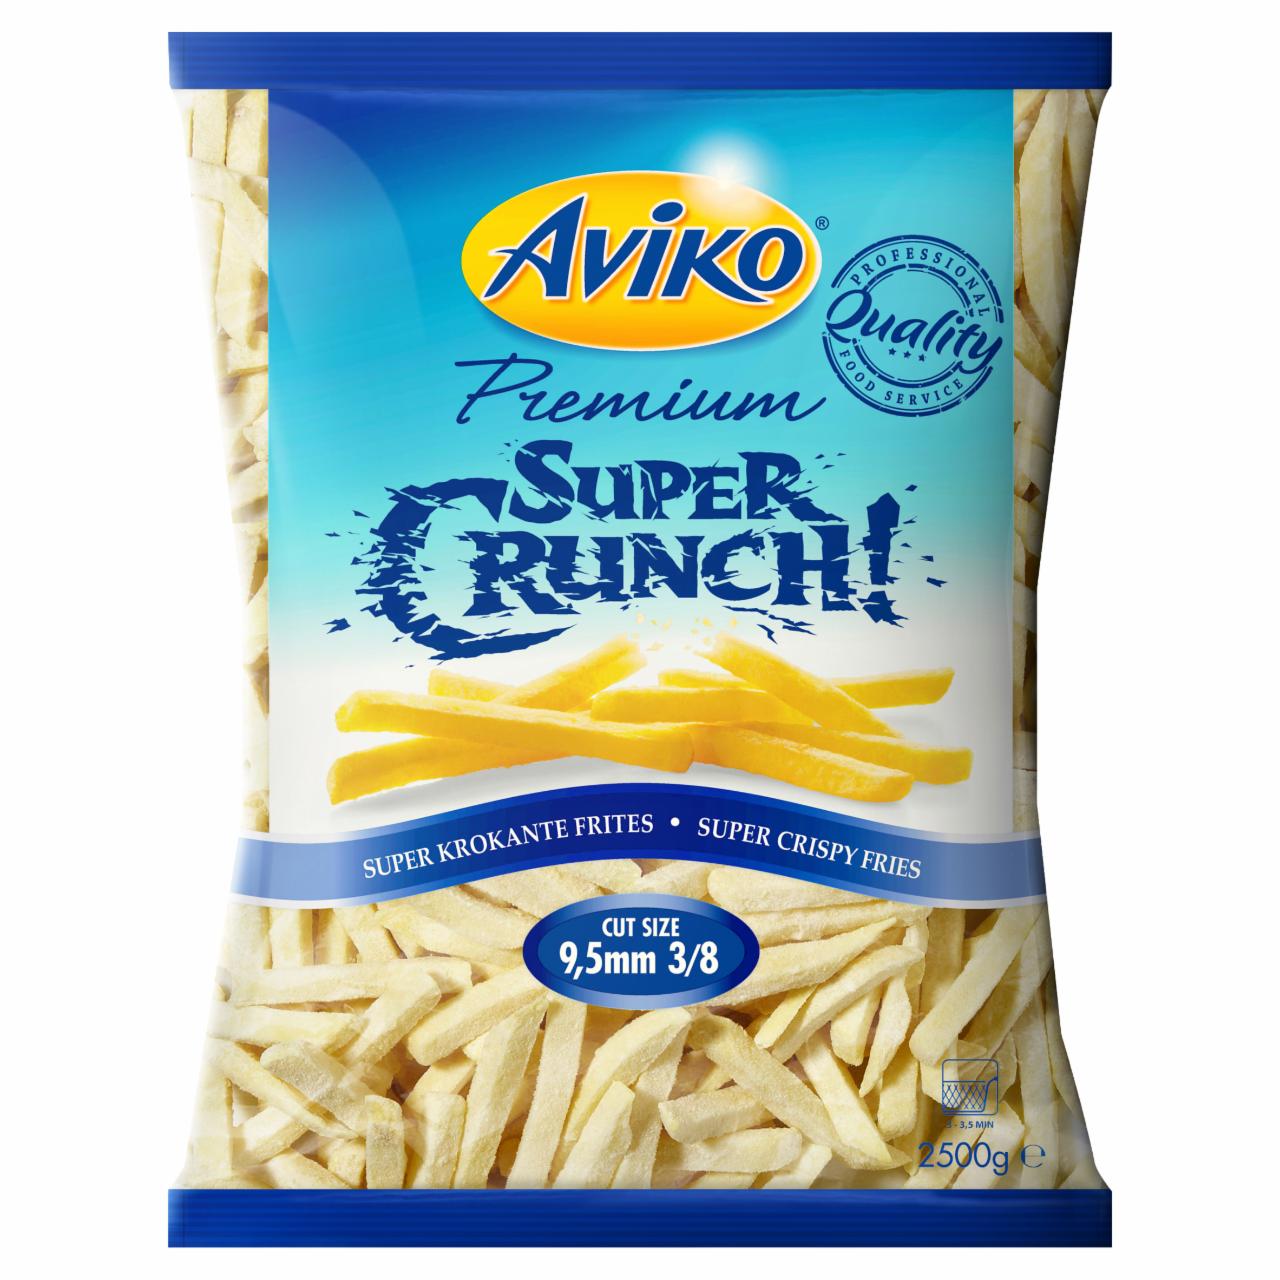 Képek - Aviko Premium Super Crunch! gyorsfagyasztott hasábburgonya extra ropogós bevonattal 9,5 mm 2500 g